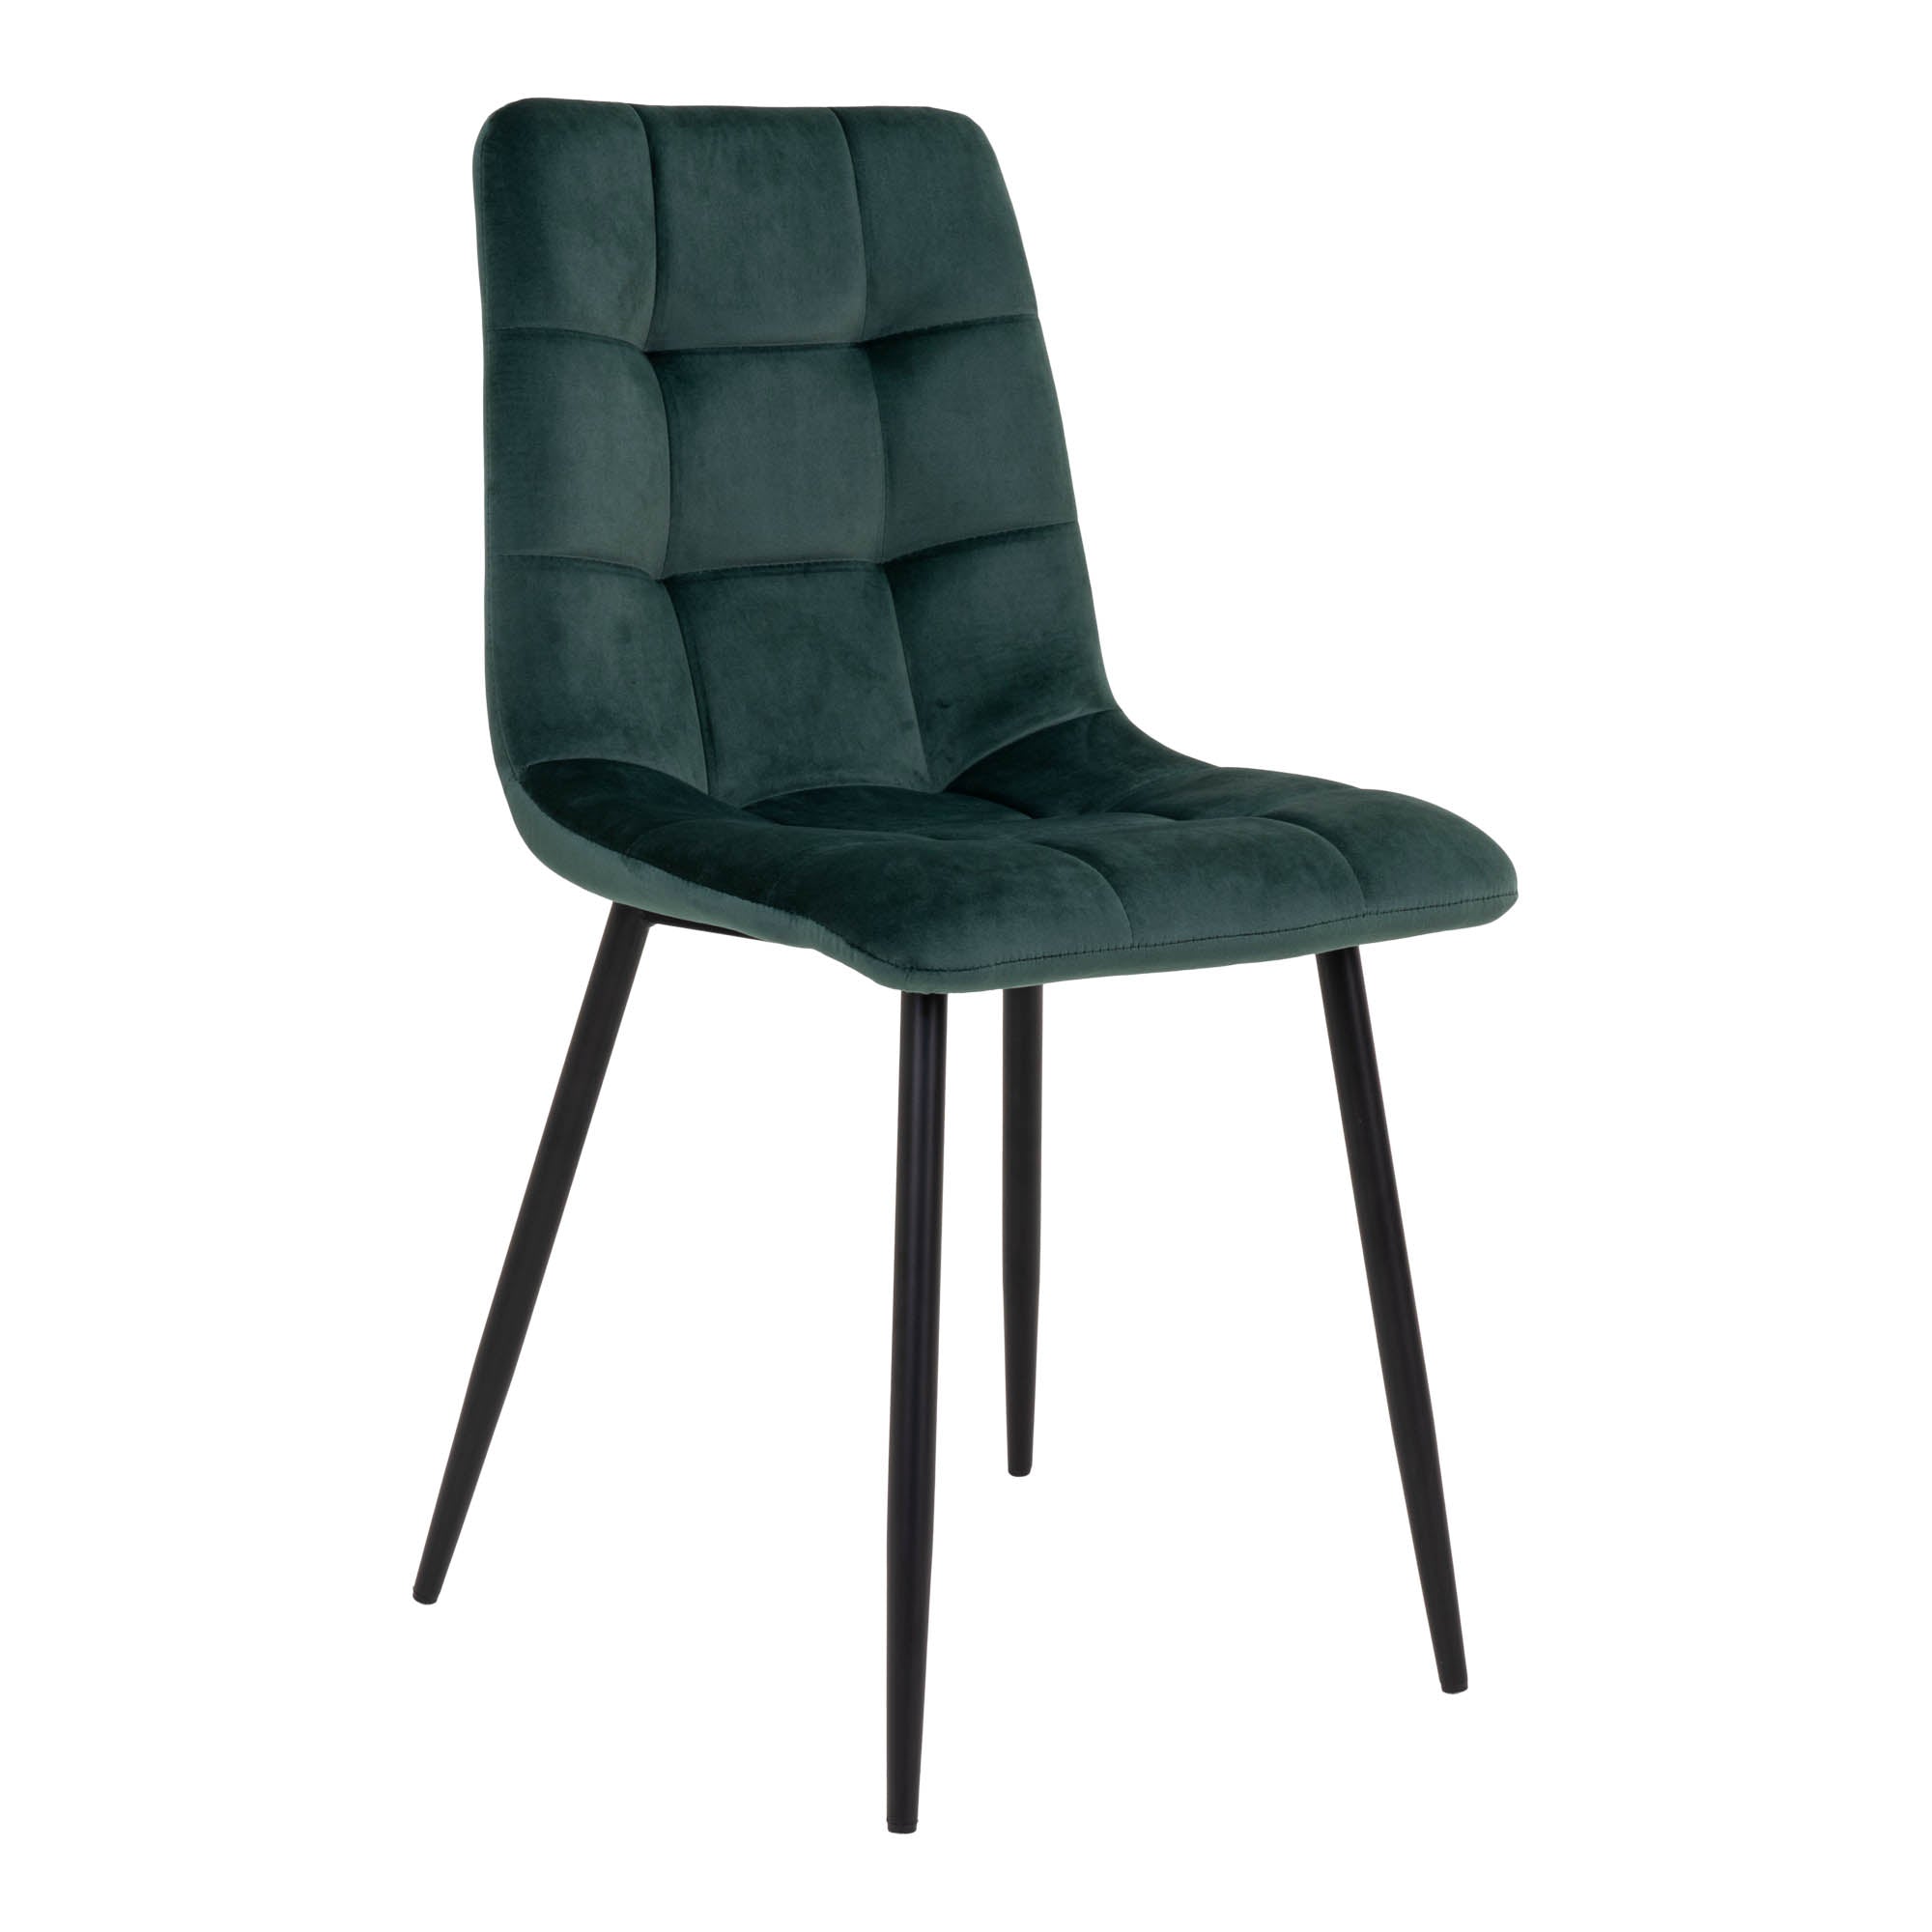 Middelfart Spisebordsstol - Spisebordsstol I Velour, Mørkegrøn Med Sorte Ben ⎮ Sæt af 2 stk. ⎮ 5713917007516 ⎮ 1001195 